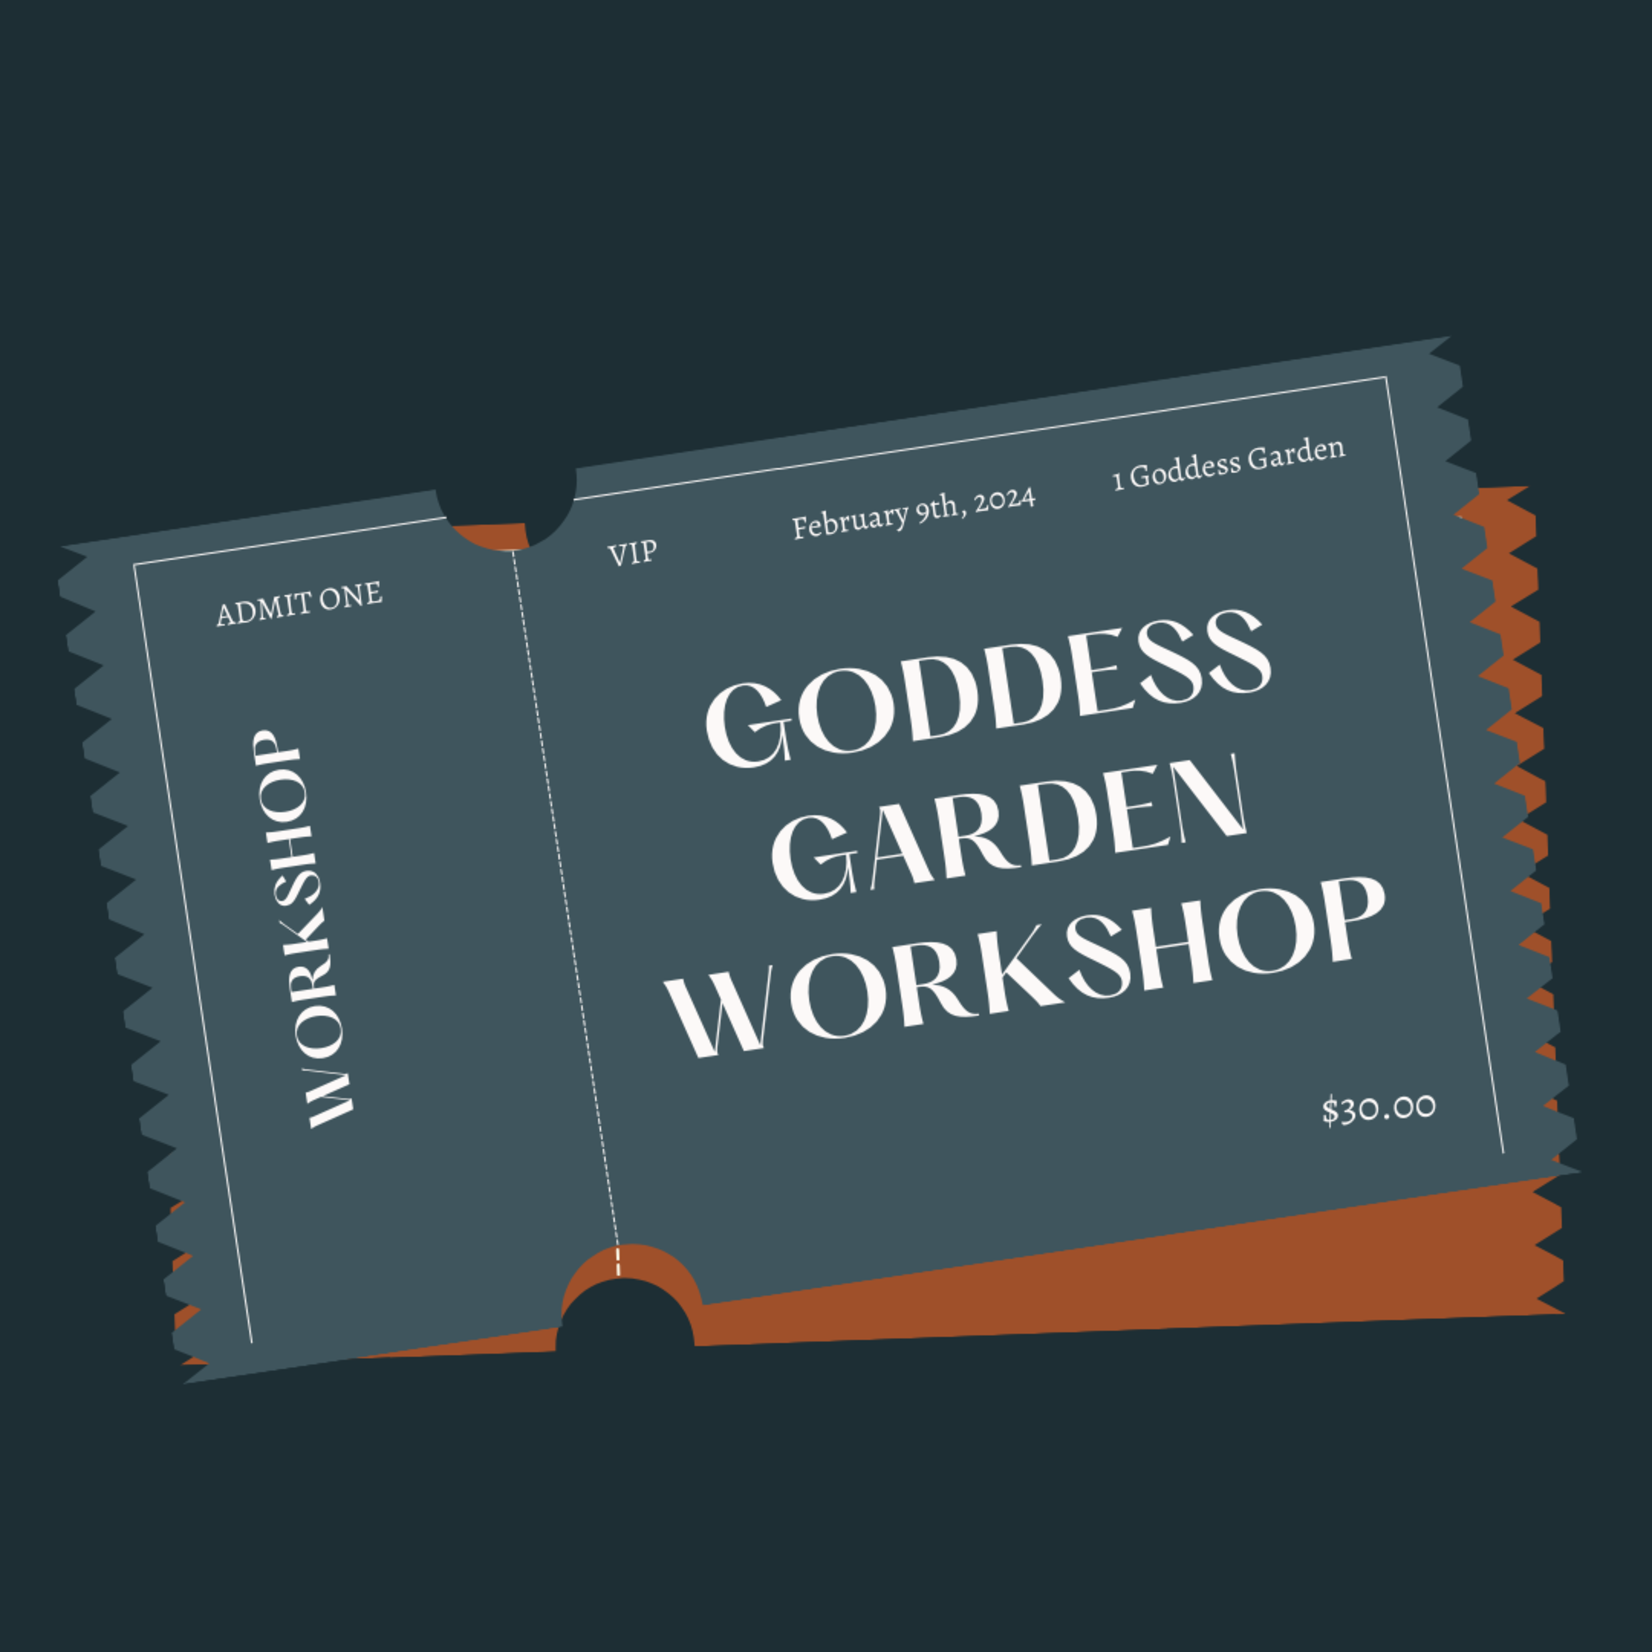 Goddess Garden Workshop Ticket